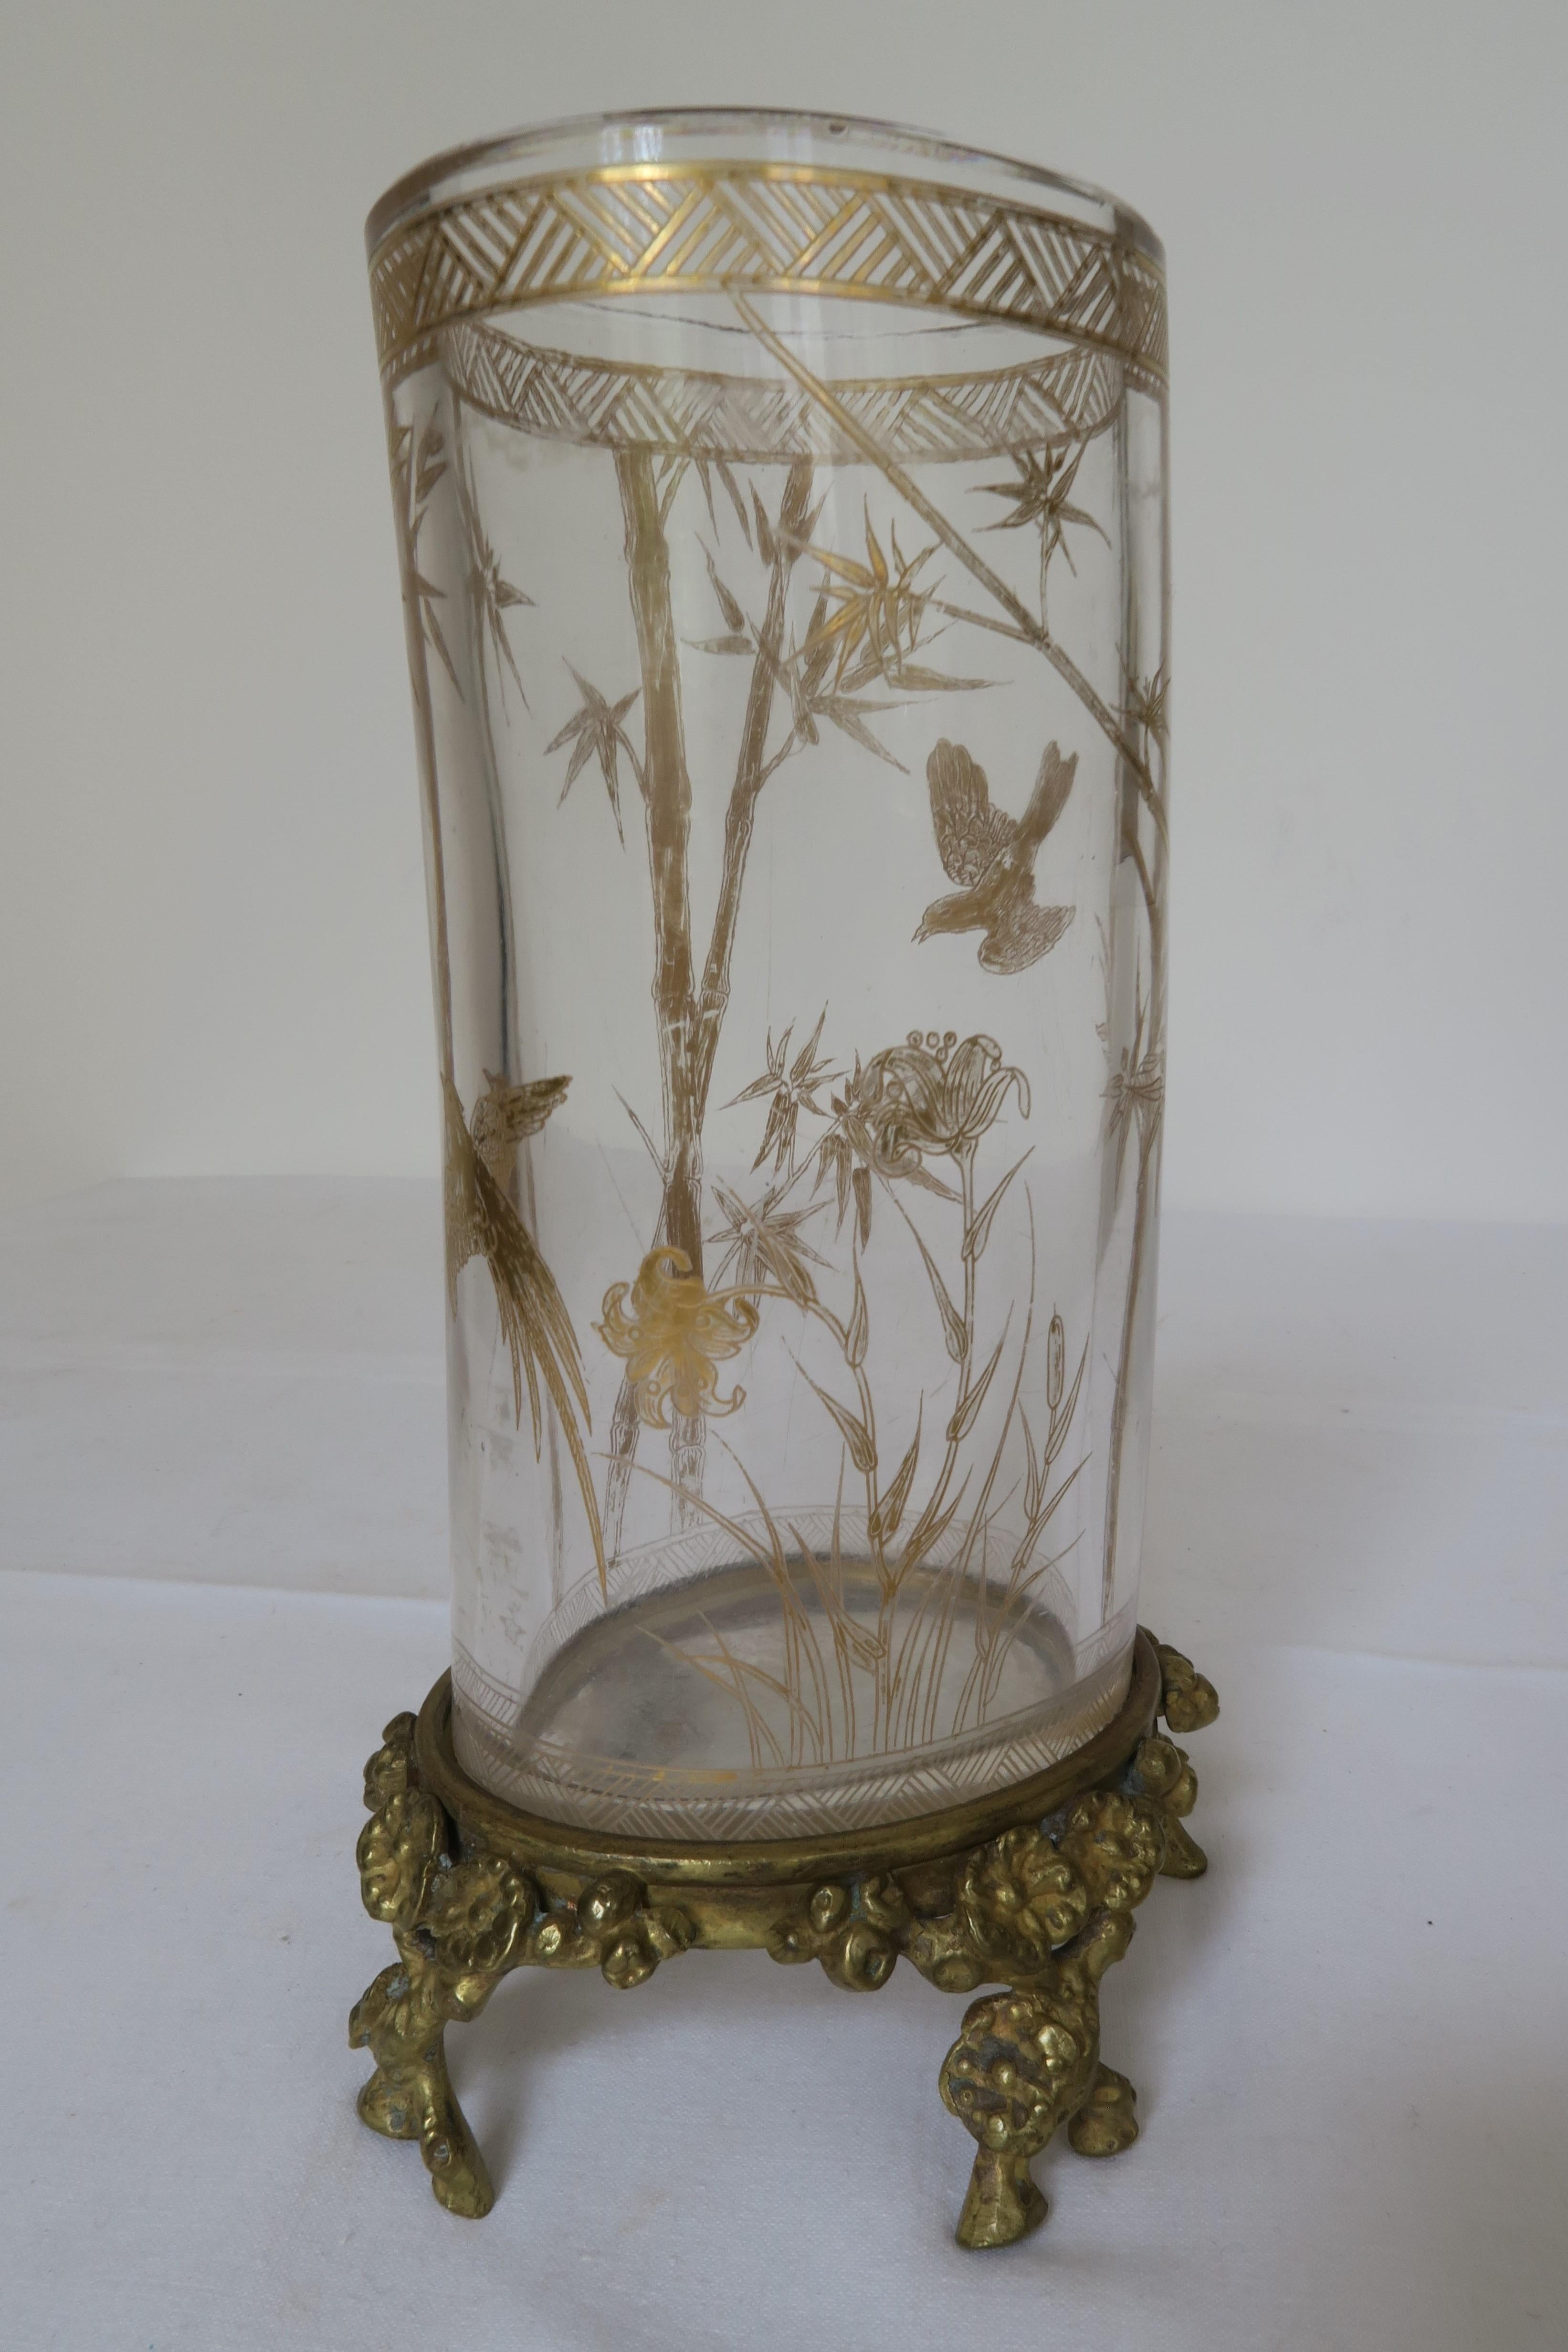 Zum Verkauf steht eine besondere Vase aus dem Hause Baccarat. Der leicht gebogene Glaszylinder wurde mit einem komplizierten Muster aus Vögeln, Blumen und Bambus vergoldet. Der Fuß der Vase ist ebenfalls nach Zweigen geformt, die mit üppigen Blüten